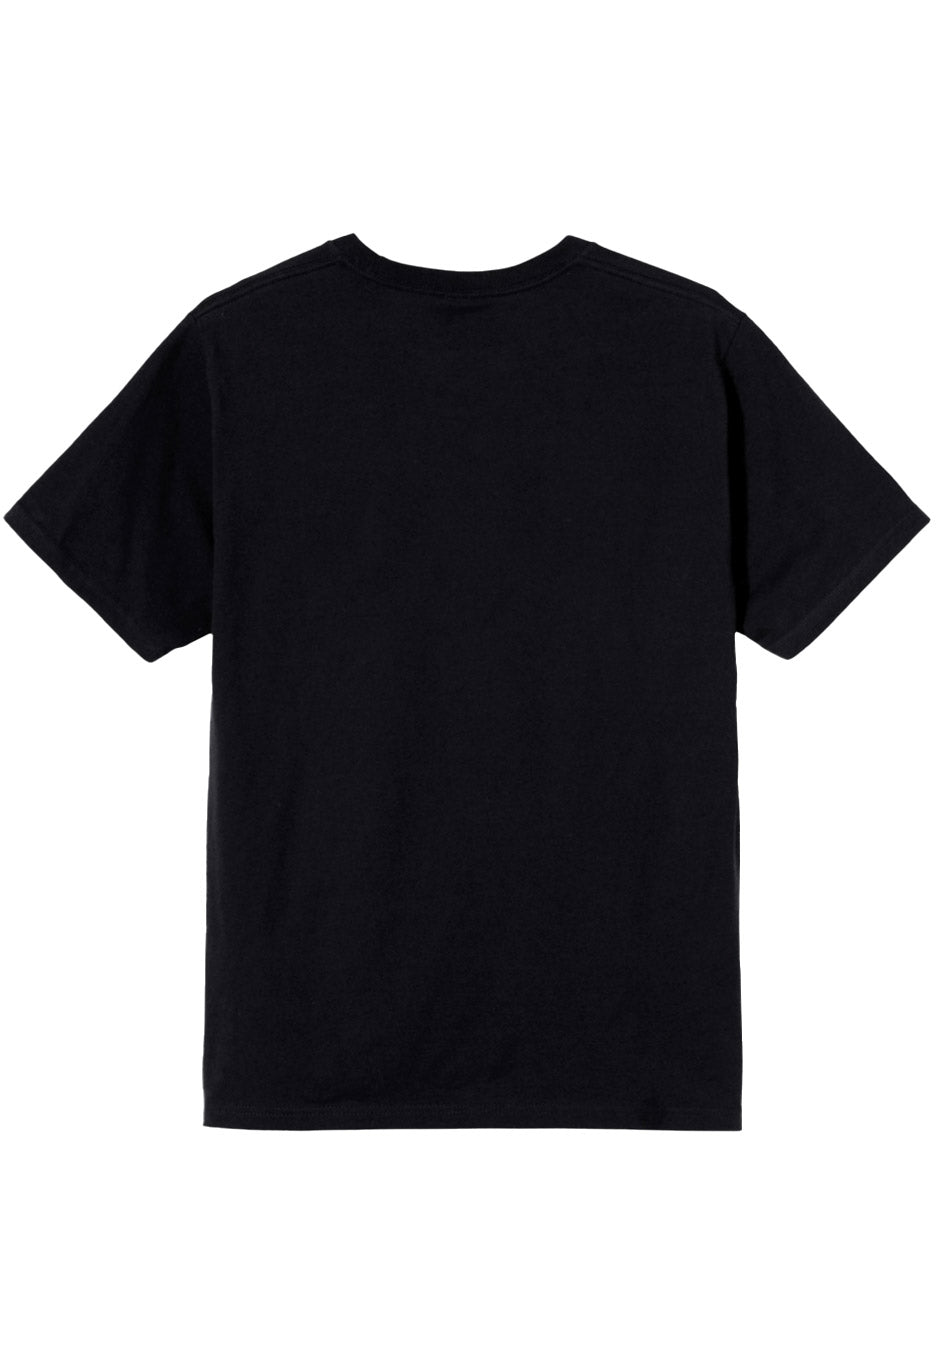 Allegaeon - Meiosis - T-Shirt